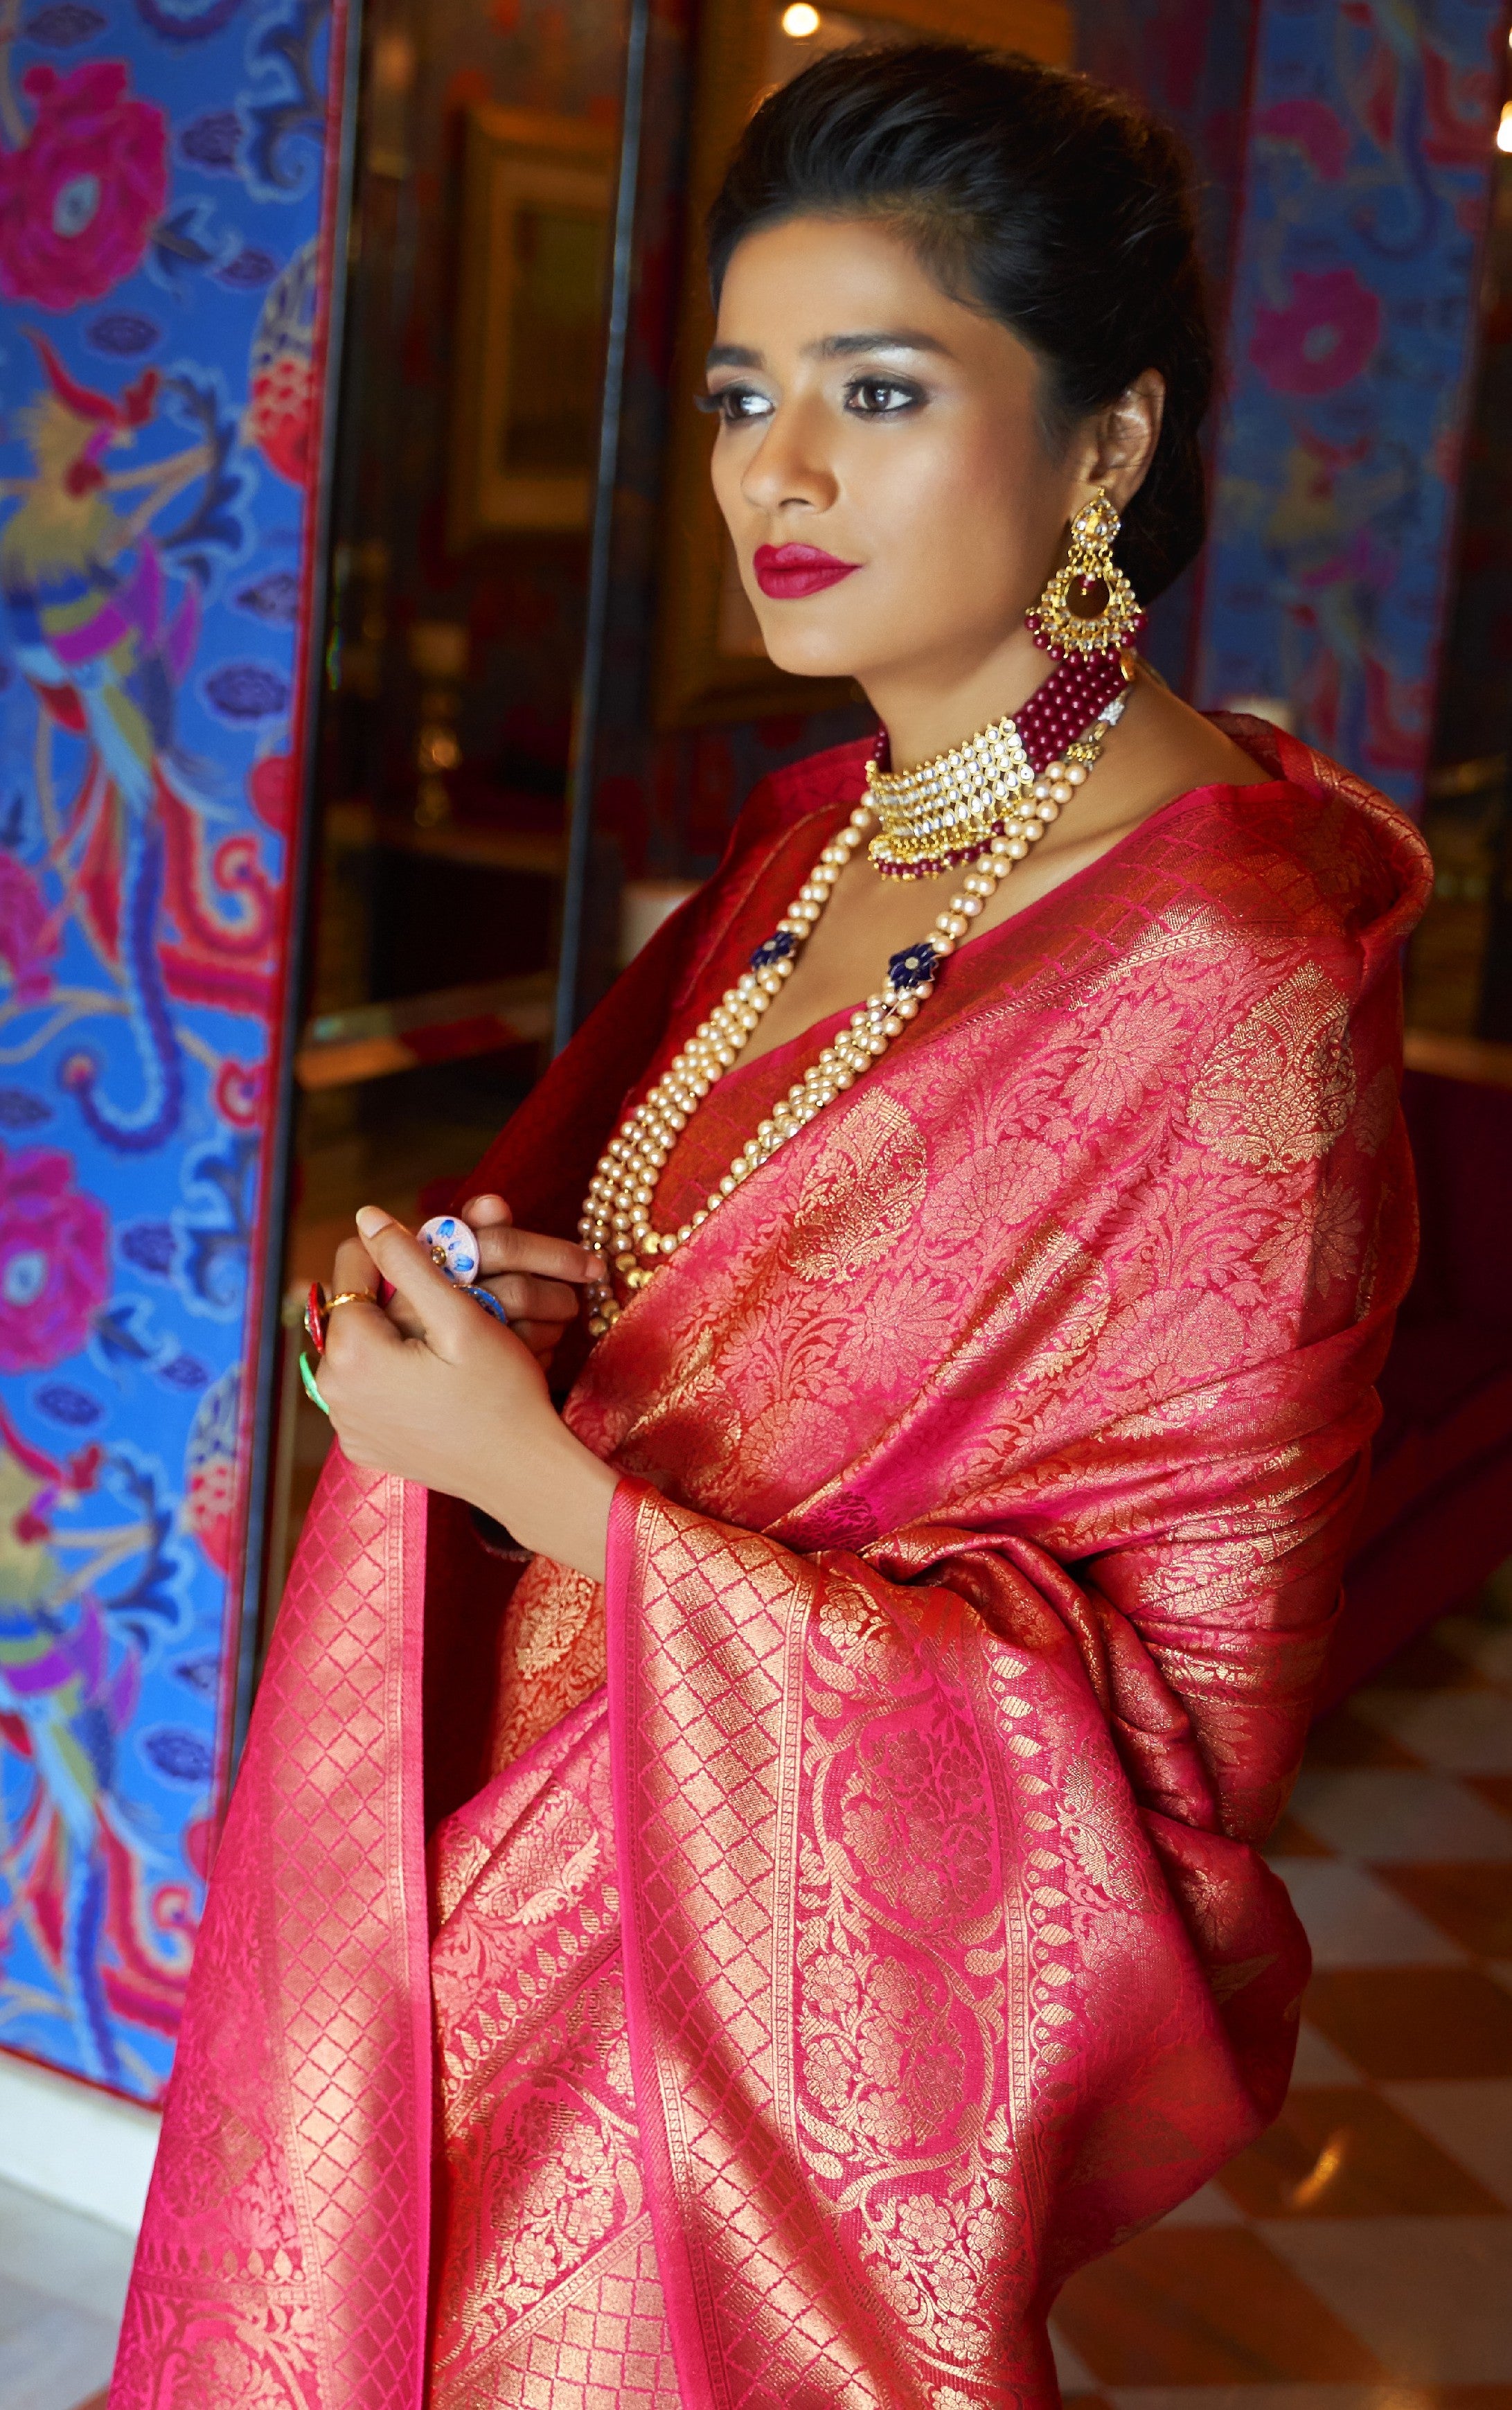 Banarasi saree bridal | Indian beauty saree, 10 most beautiful women,  Bridal jewellery indian